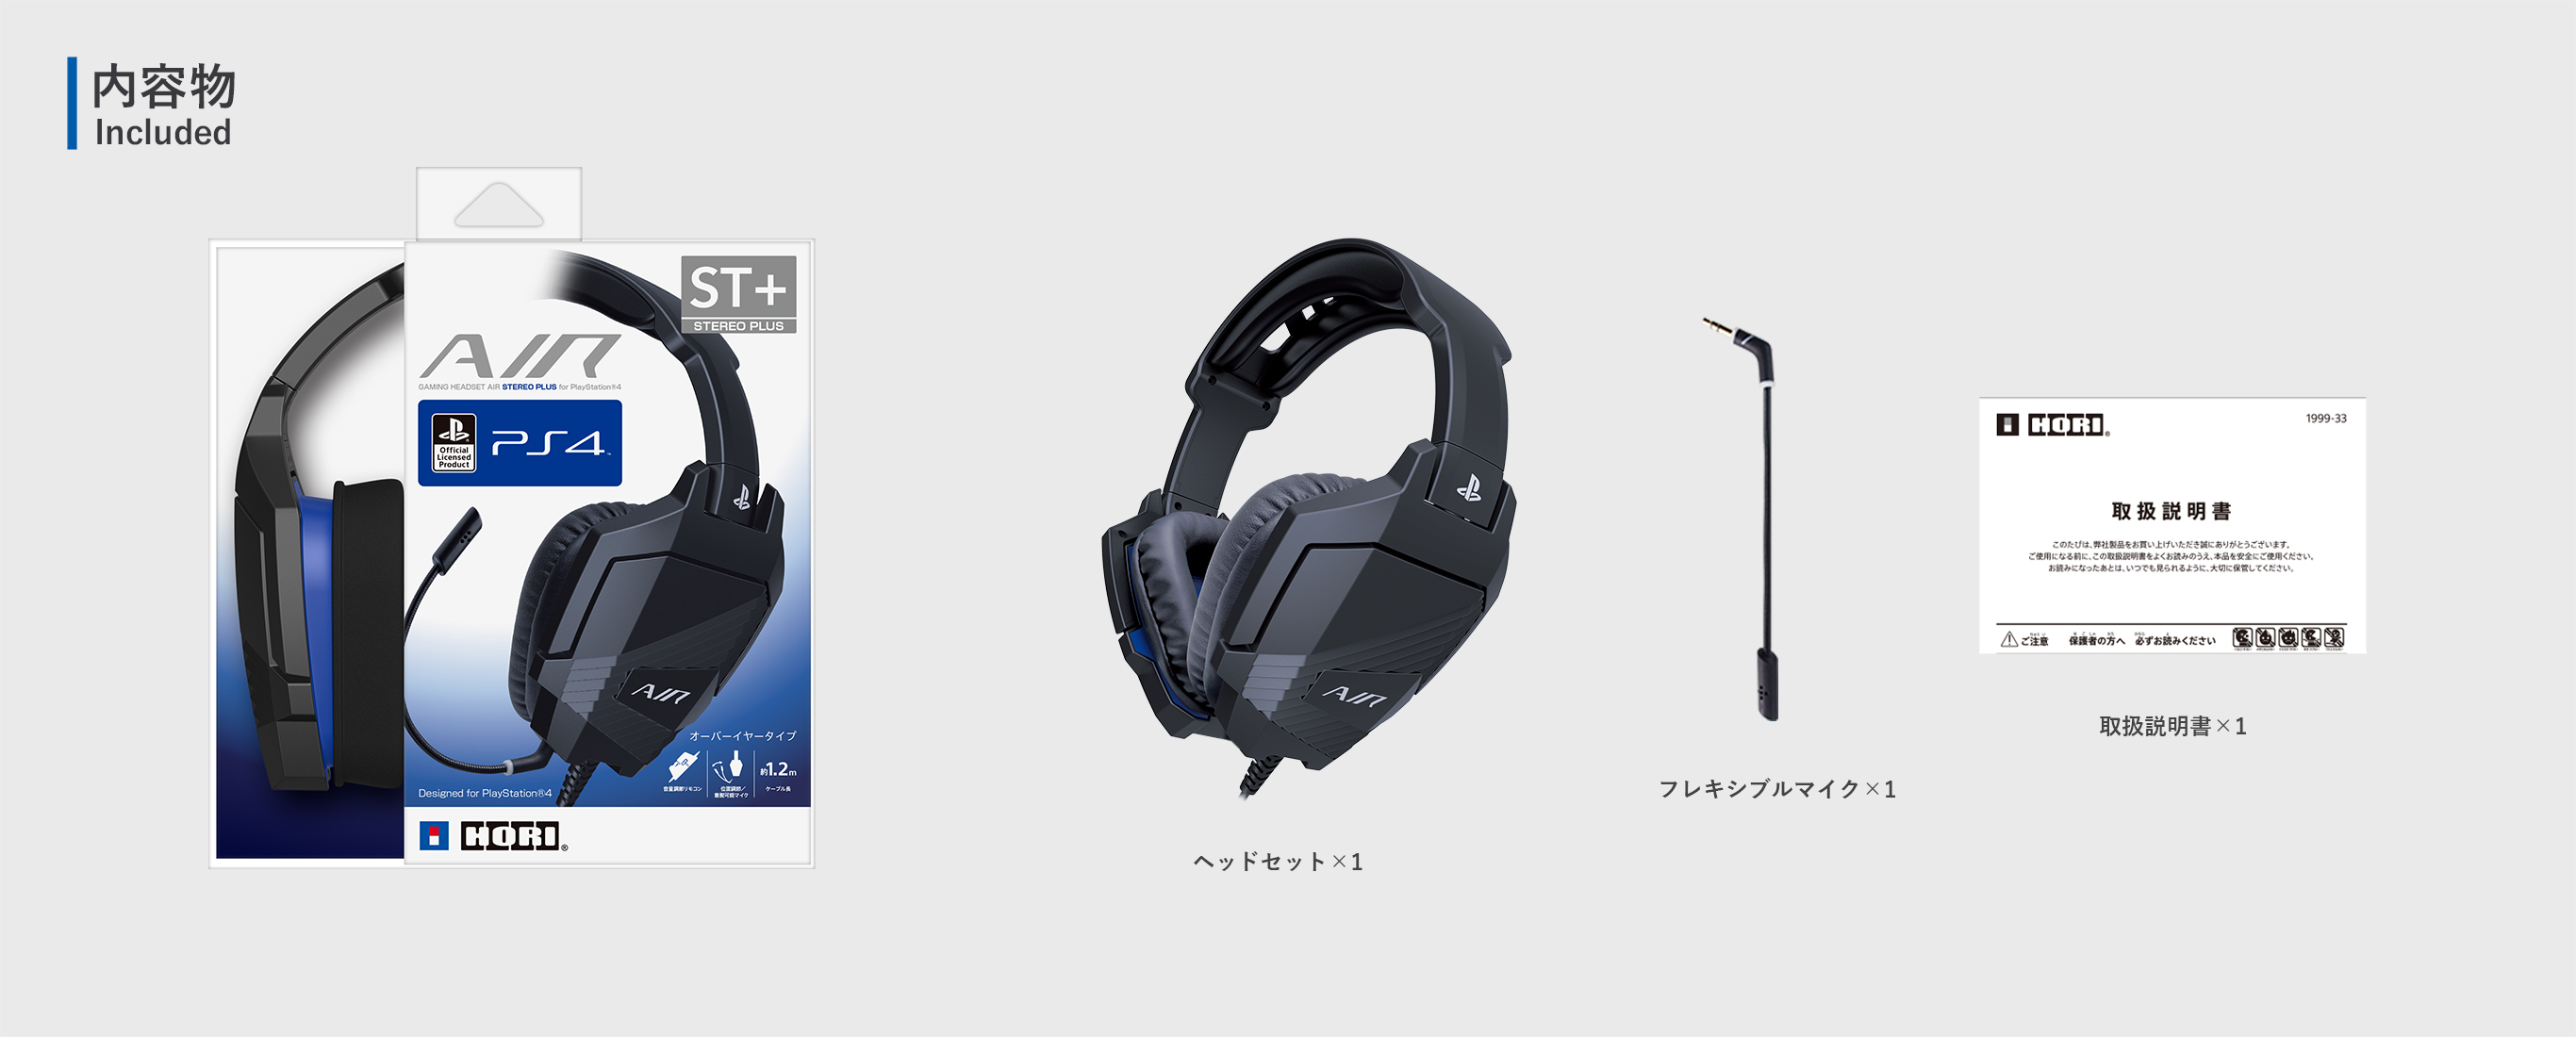 株式会社 HORI | ゲーミングヘッドセットAIR STEREO PLUS for PlayStation®4